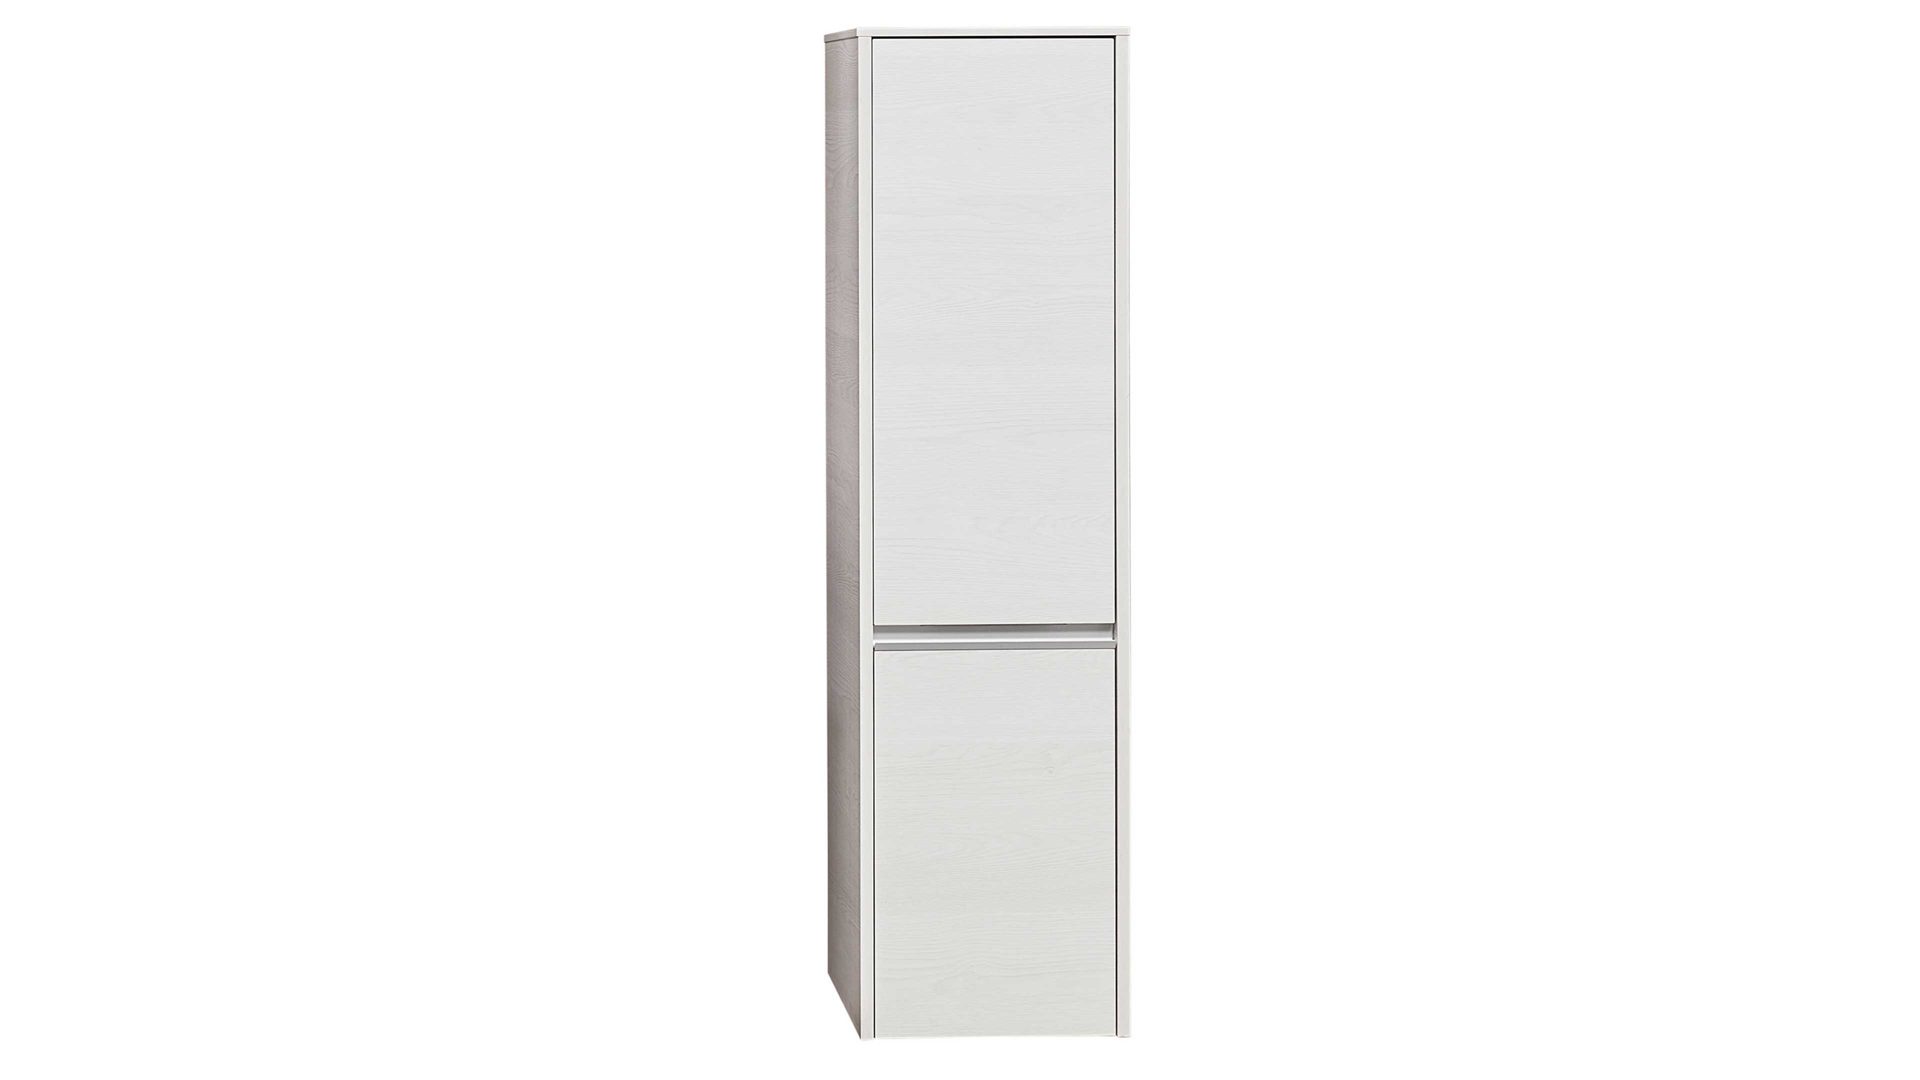 Midischrank Pelipal aus Holz in Weiß pelipal Serie 6040 - Midischrank weiße Eiche – zwei Türen